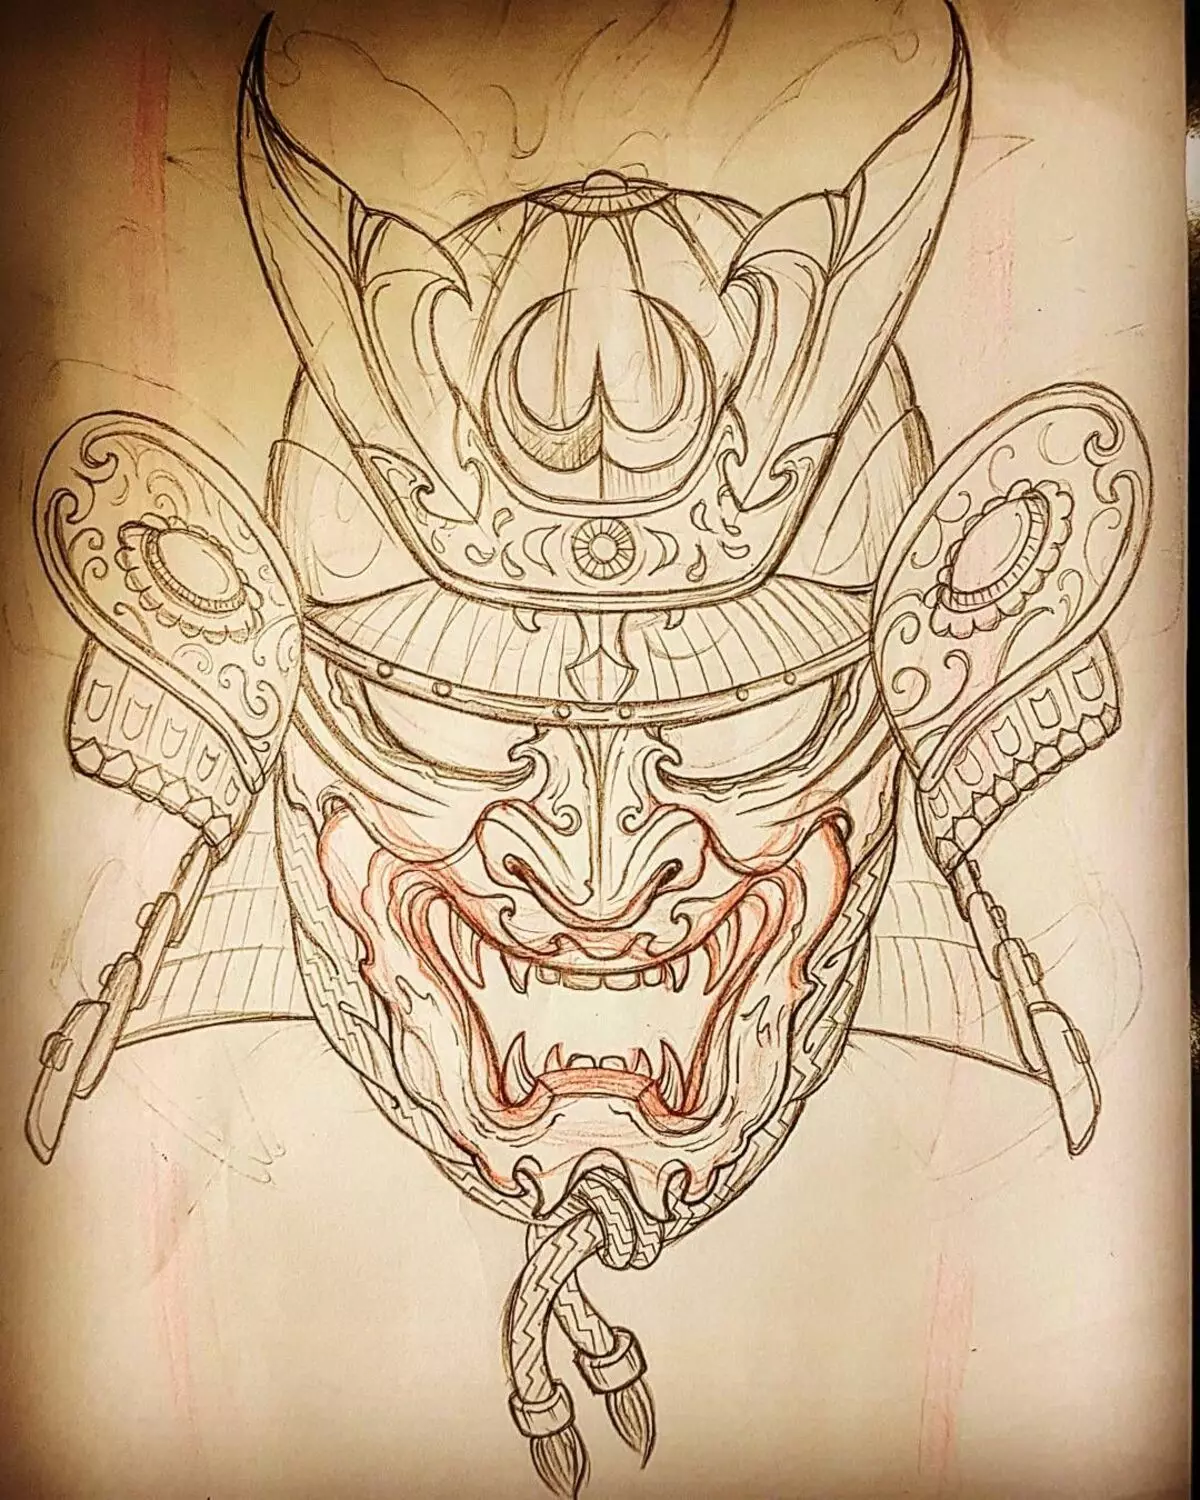 Tattoo muchimiro cheJapan masks: madhimoni uye zvavanoreva. Sketches yemateti mune chimiro cheJapan masks. Tattoo 